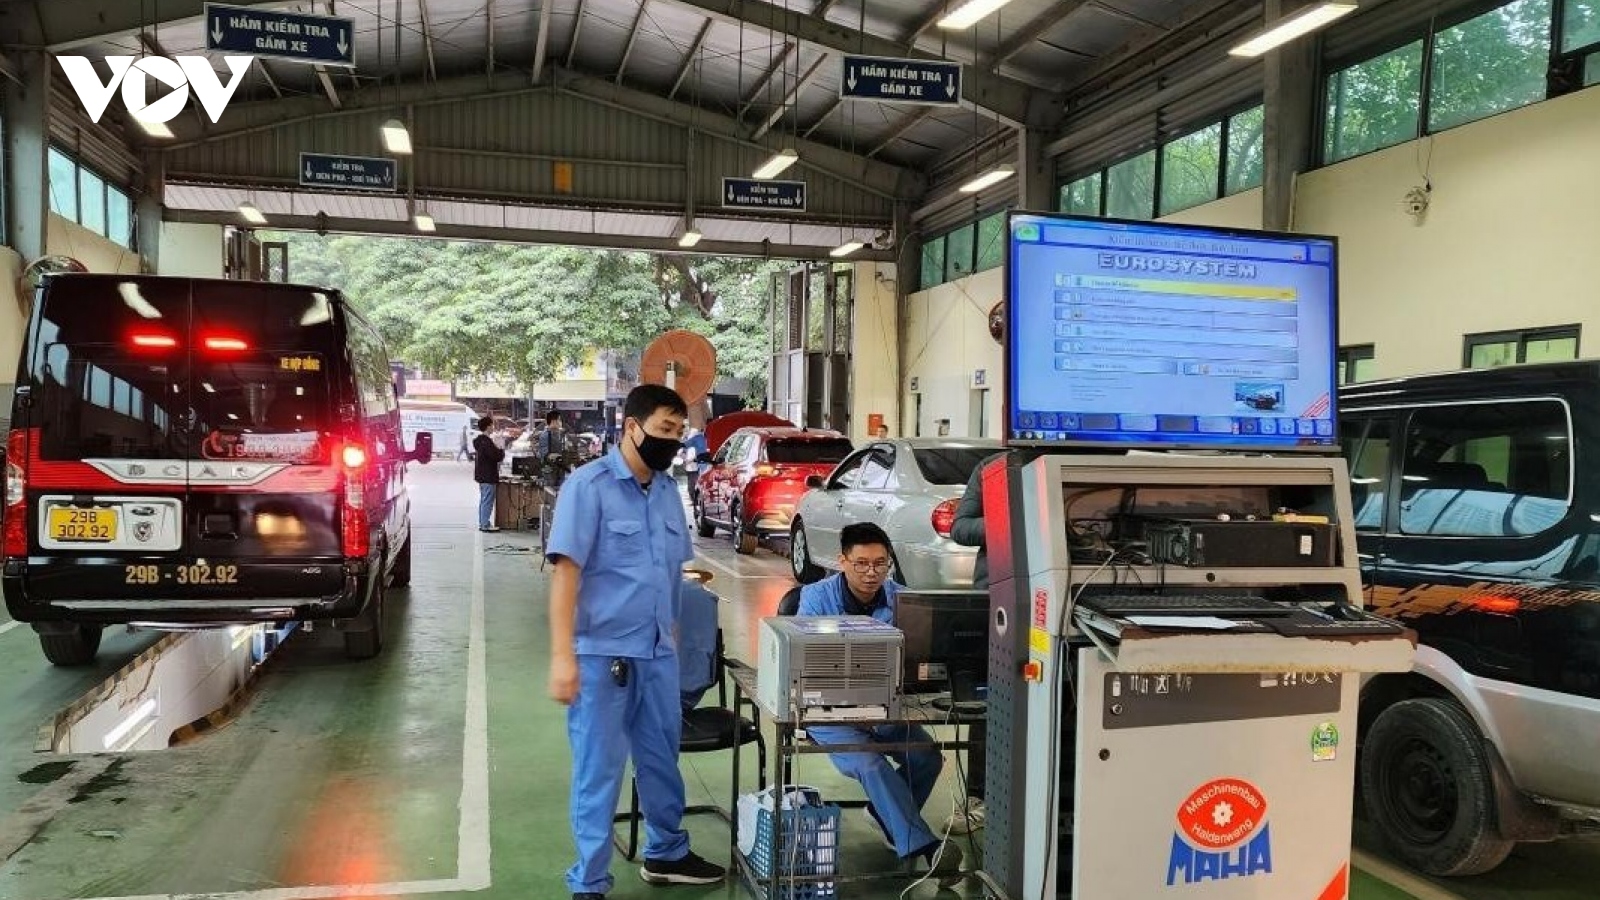 Trung tâm đăng kiểm chỉ nhận xe chính chủ: Cục Đăng kiểm Việt Nam chỉ đạo "nóng"